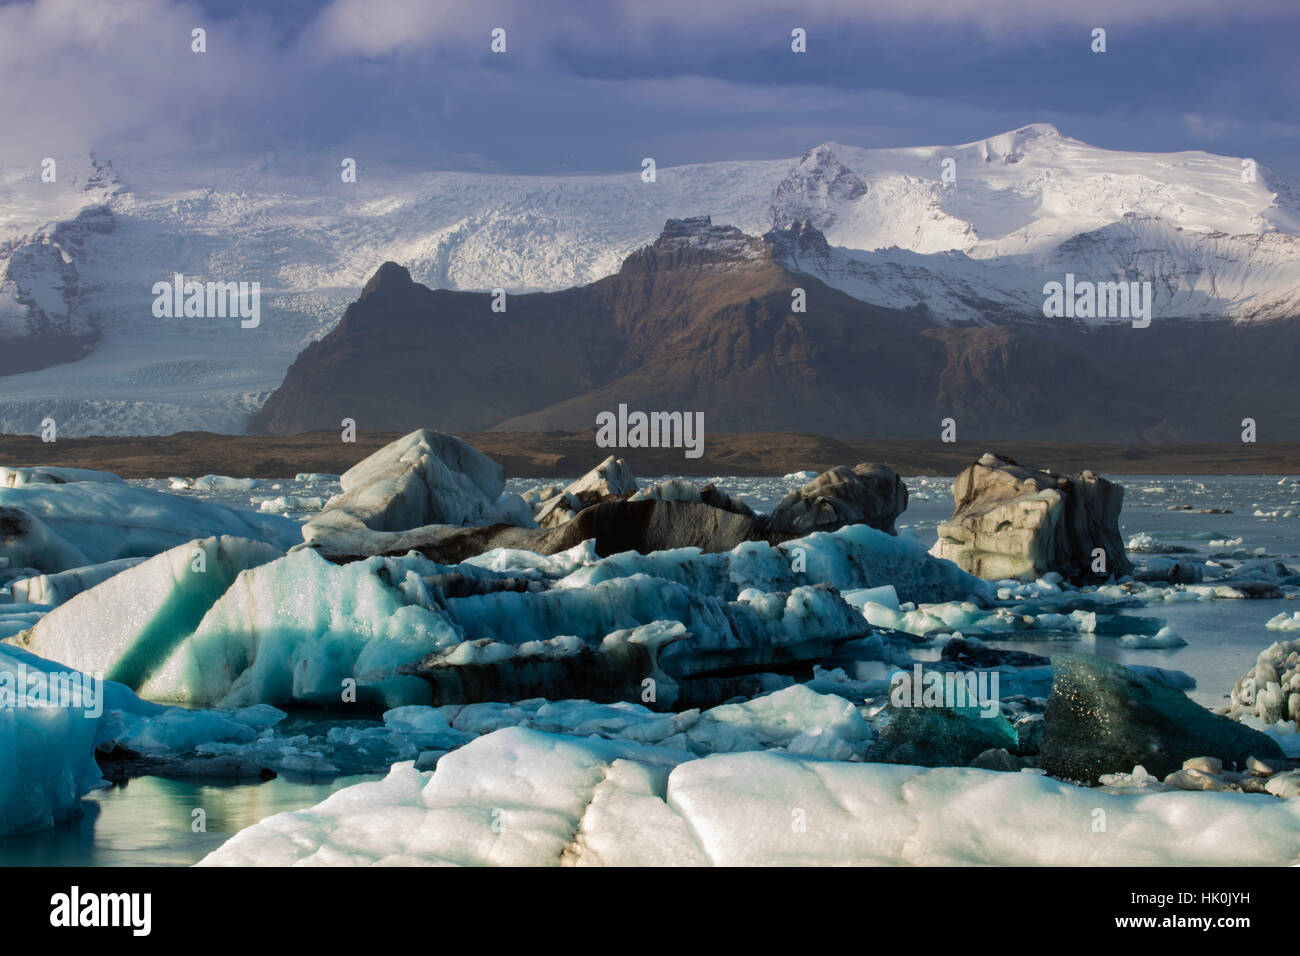 Icebergs in the Jokulsarlon glacial lake in Vatnajokull National Park in southeast Iceland, Polar Regions Stock Photo